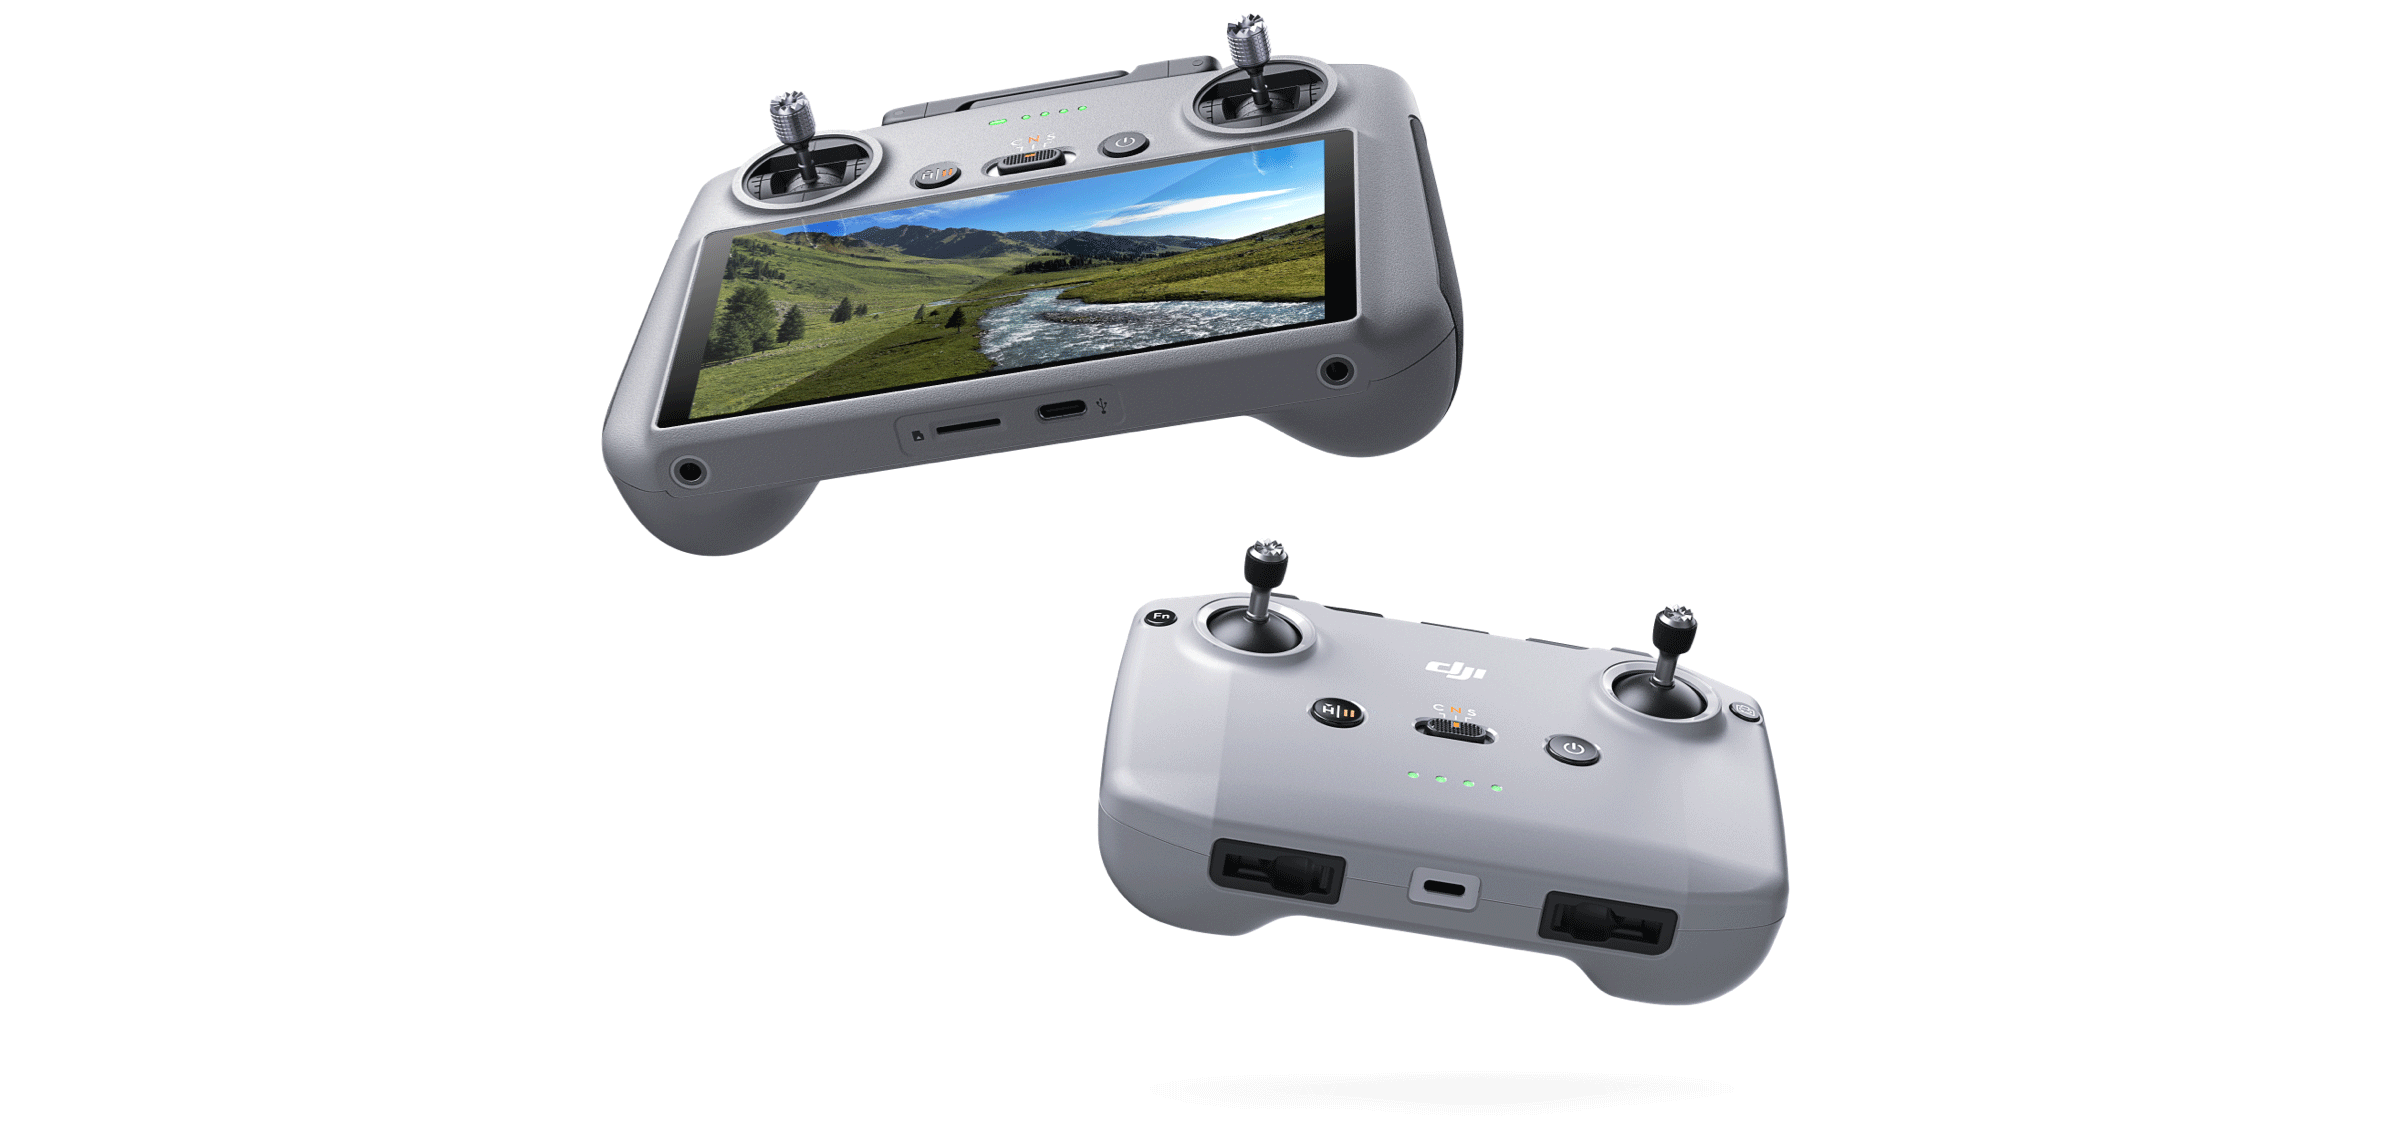 Mini 4 Pro має технологію передачі відео DJI O4. Насолоджуйтеся надчуйним керуванням і плавними живими трансляціями FHD 1080p/60fps з відстані до 20 км. [3]